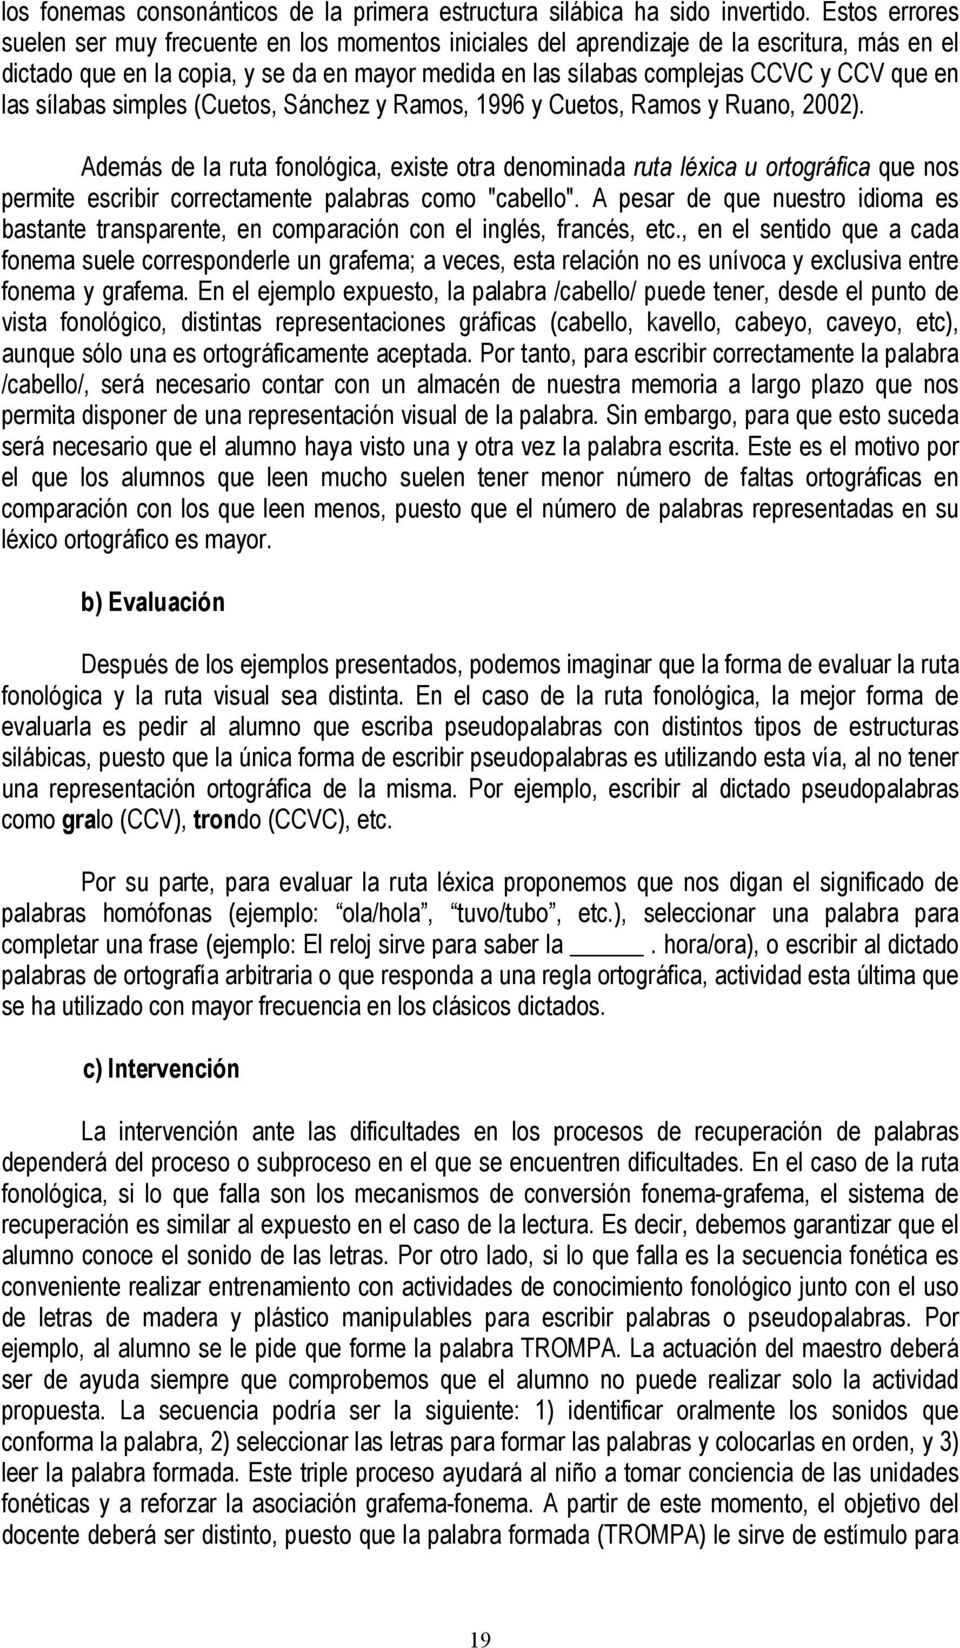 las sílabas simples (Cuetos, Sánchez y Ramos, 1996 y Cuetos, Ramos y Ruano, 2002).